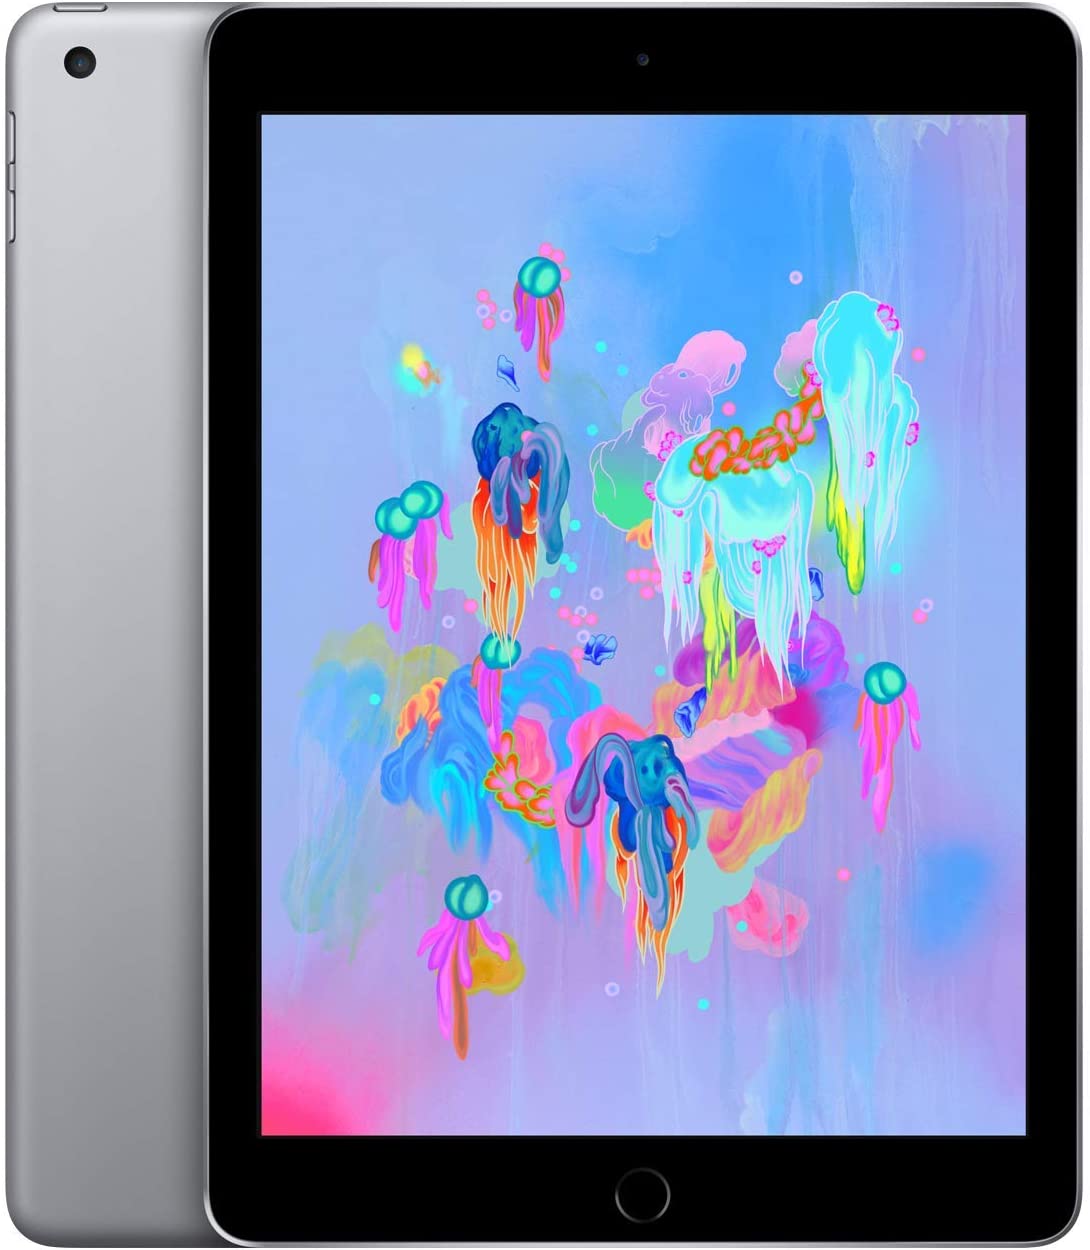 Apple iPad 6 32GB Wi-Fi Space Gray (Like New) *Free Shipping*